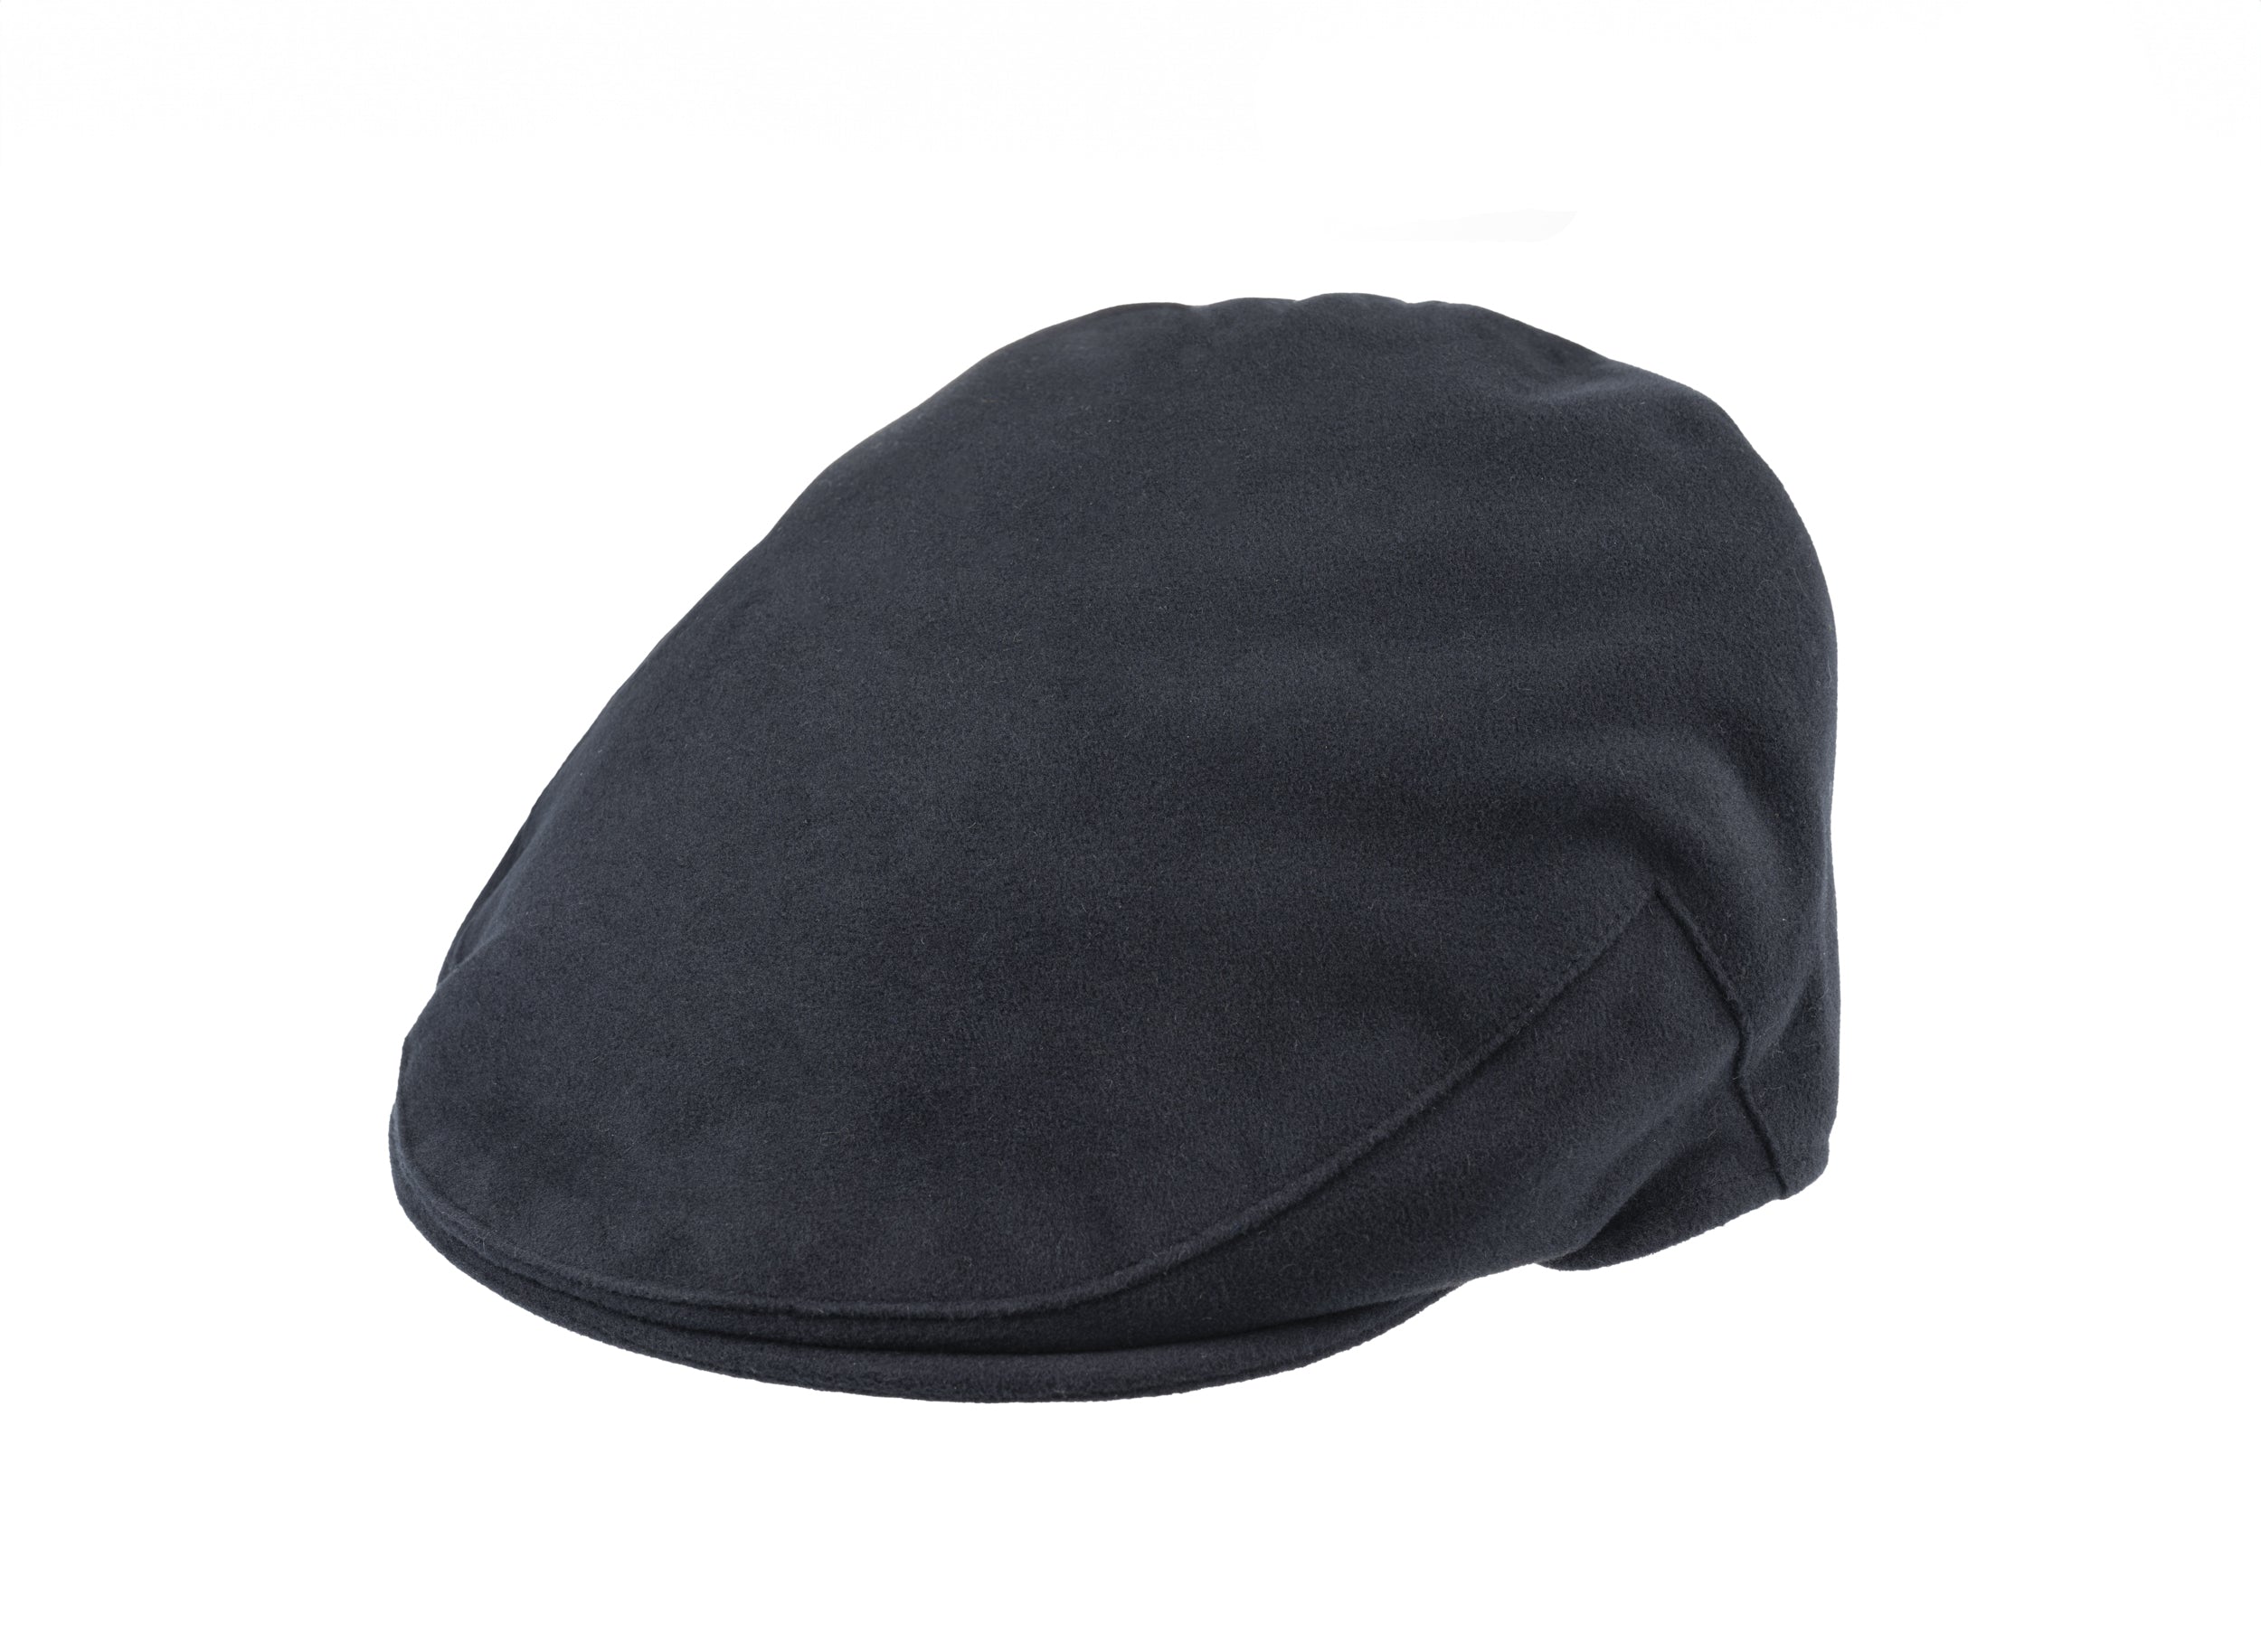 Balmoral moleskin cotton cap in Navy